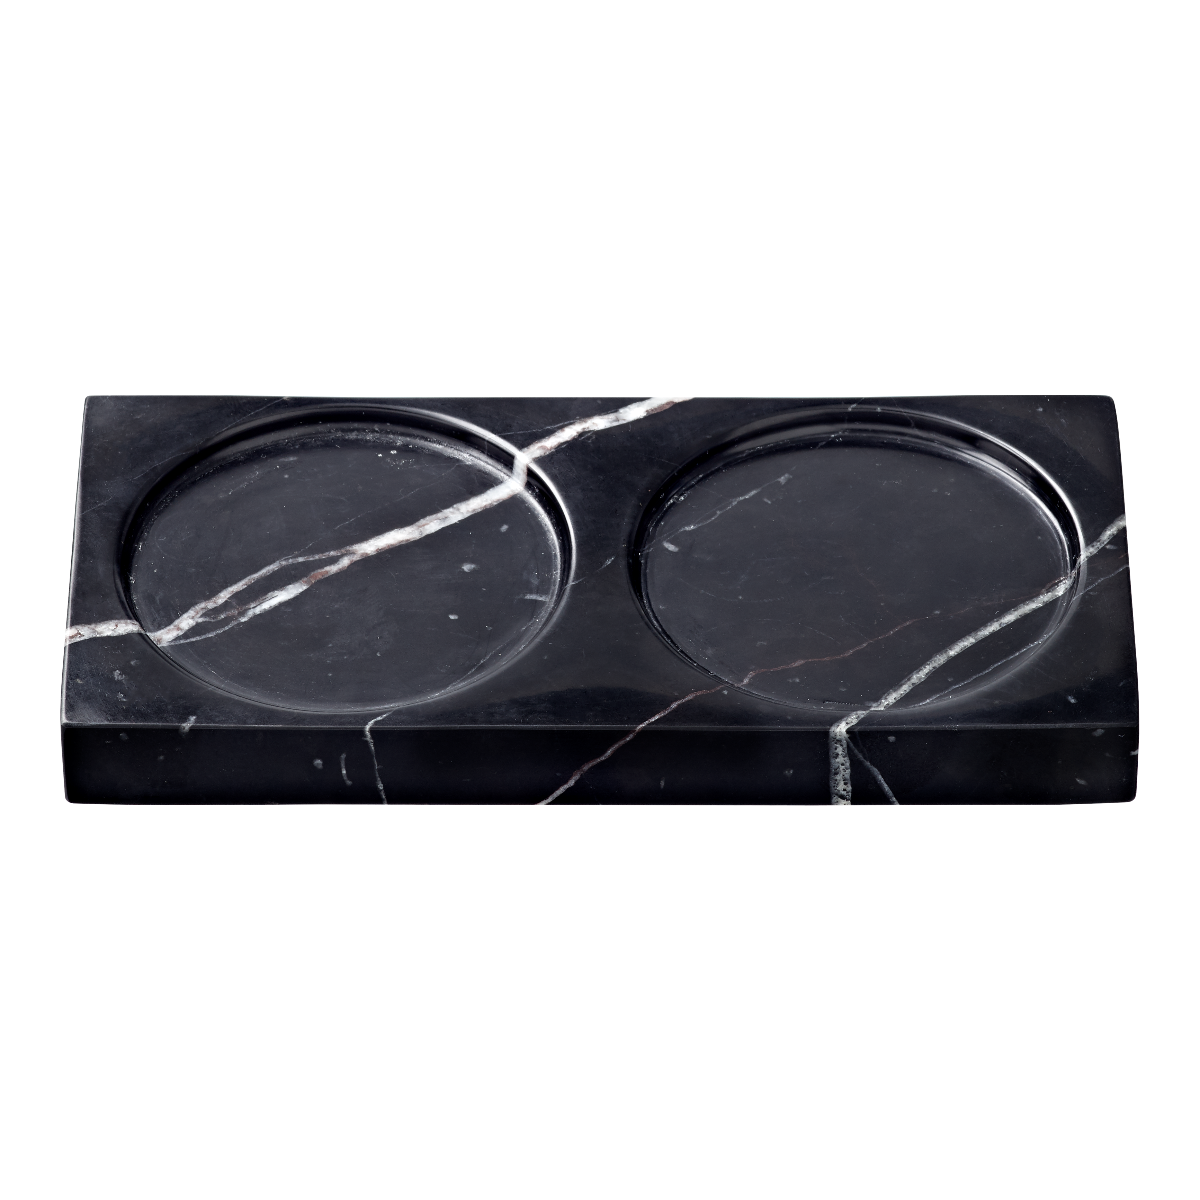 Billede af Crushgrind - Black marble2 tabletop - 15x7x1,5 cm.